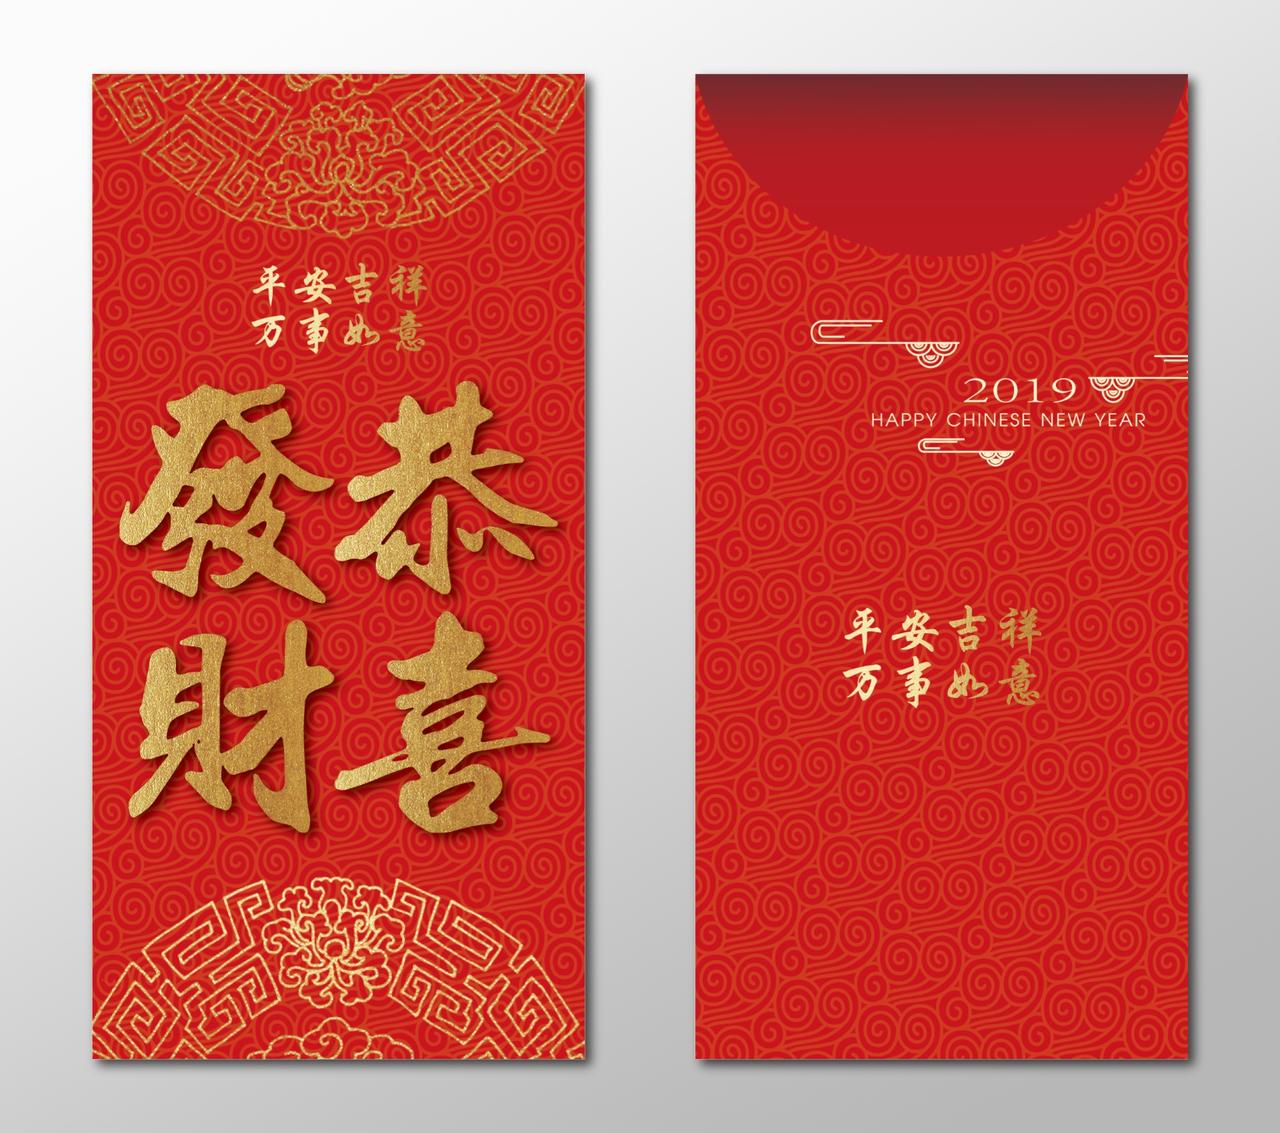 新年祝福恭喜发财春节过年利是封新年红包设计